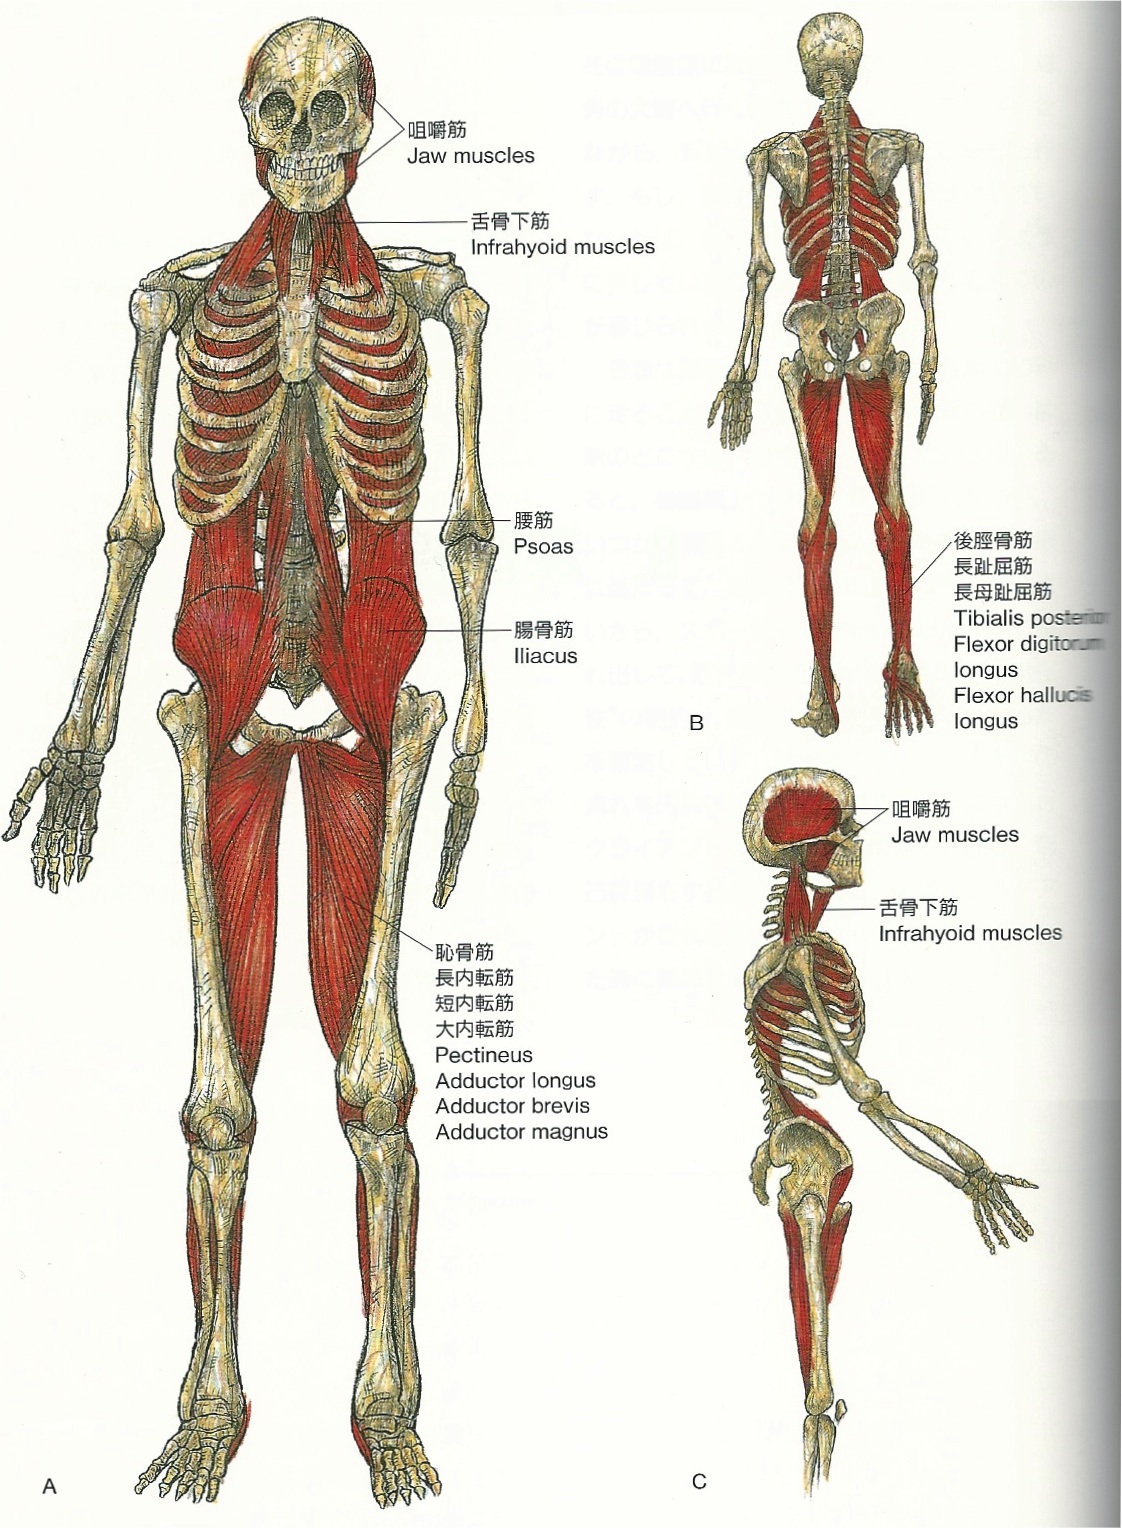 横隔膜と内臓との位置関係のせいで左の顎関節がガクガクいう Vol 33 Blog Remind Yusuke Kimura